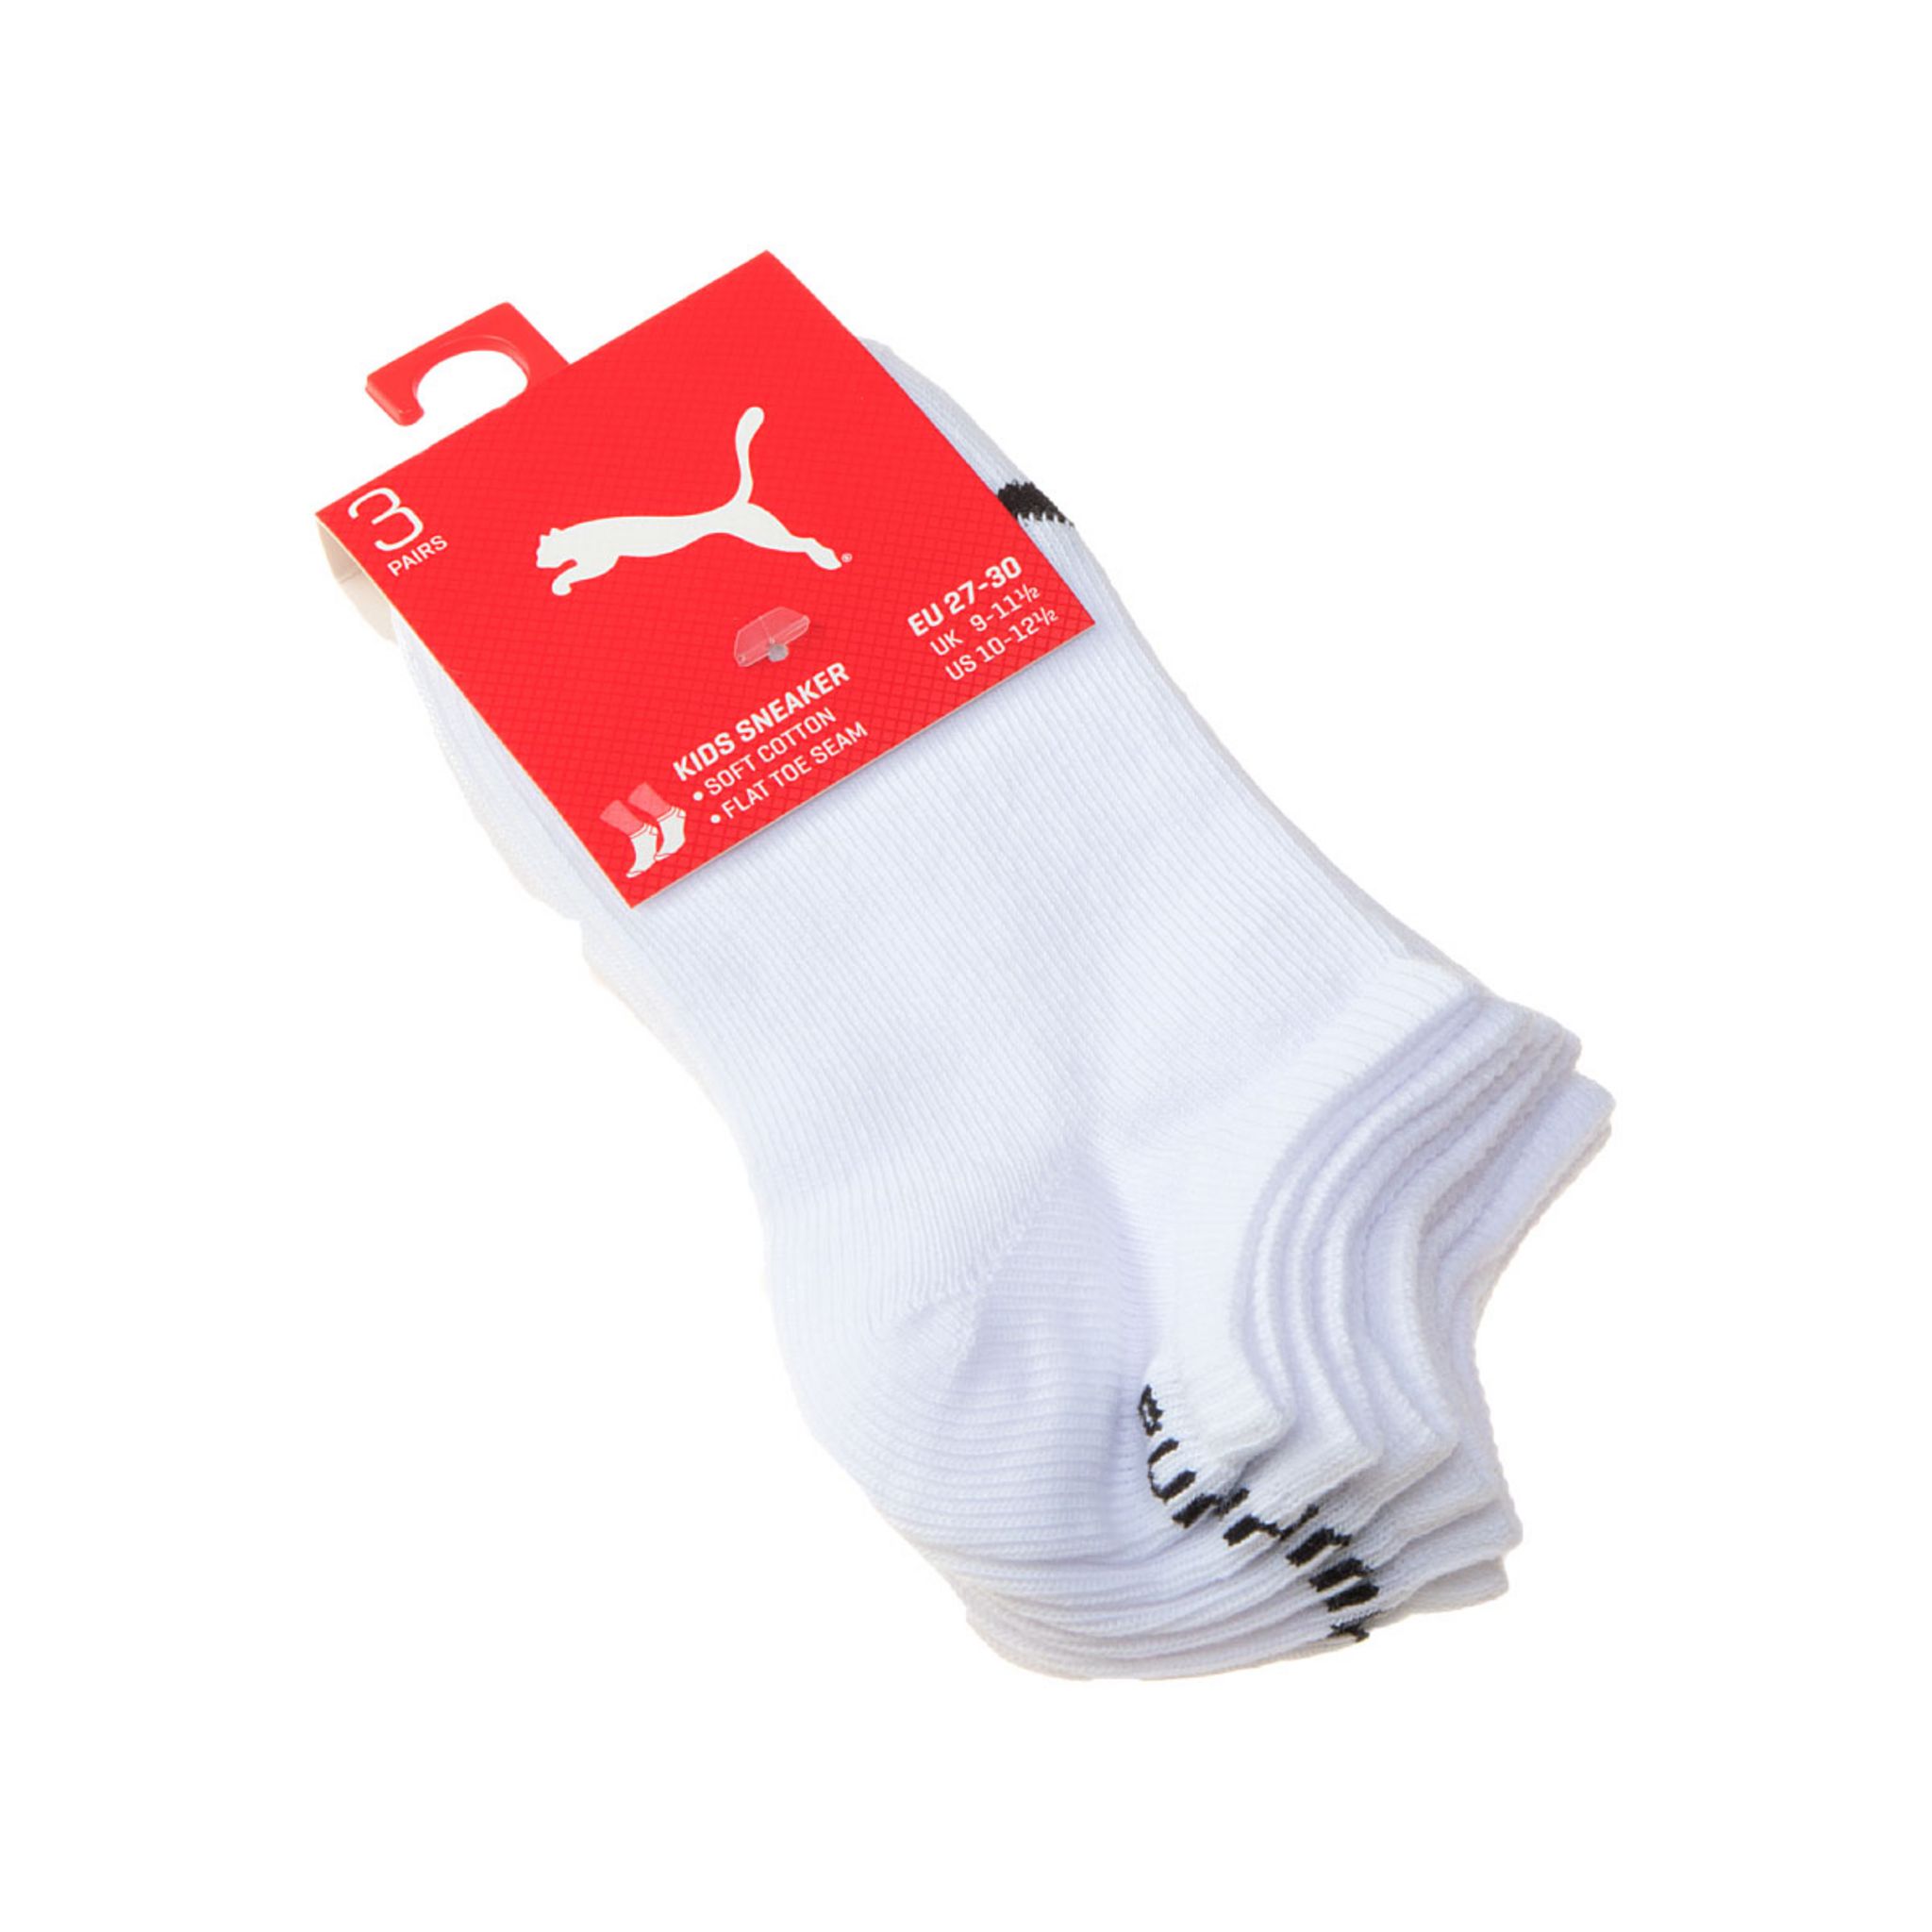 Promo Puma mini socquettes ou chaussettes homme chez Auchan